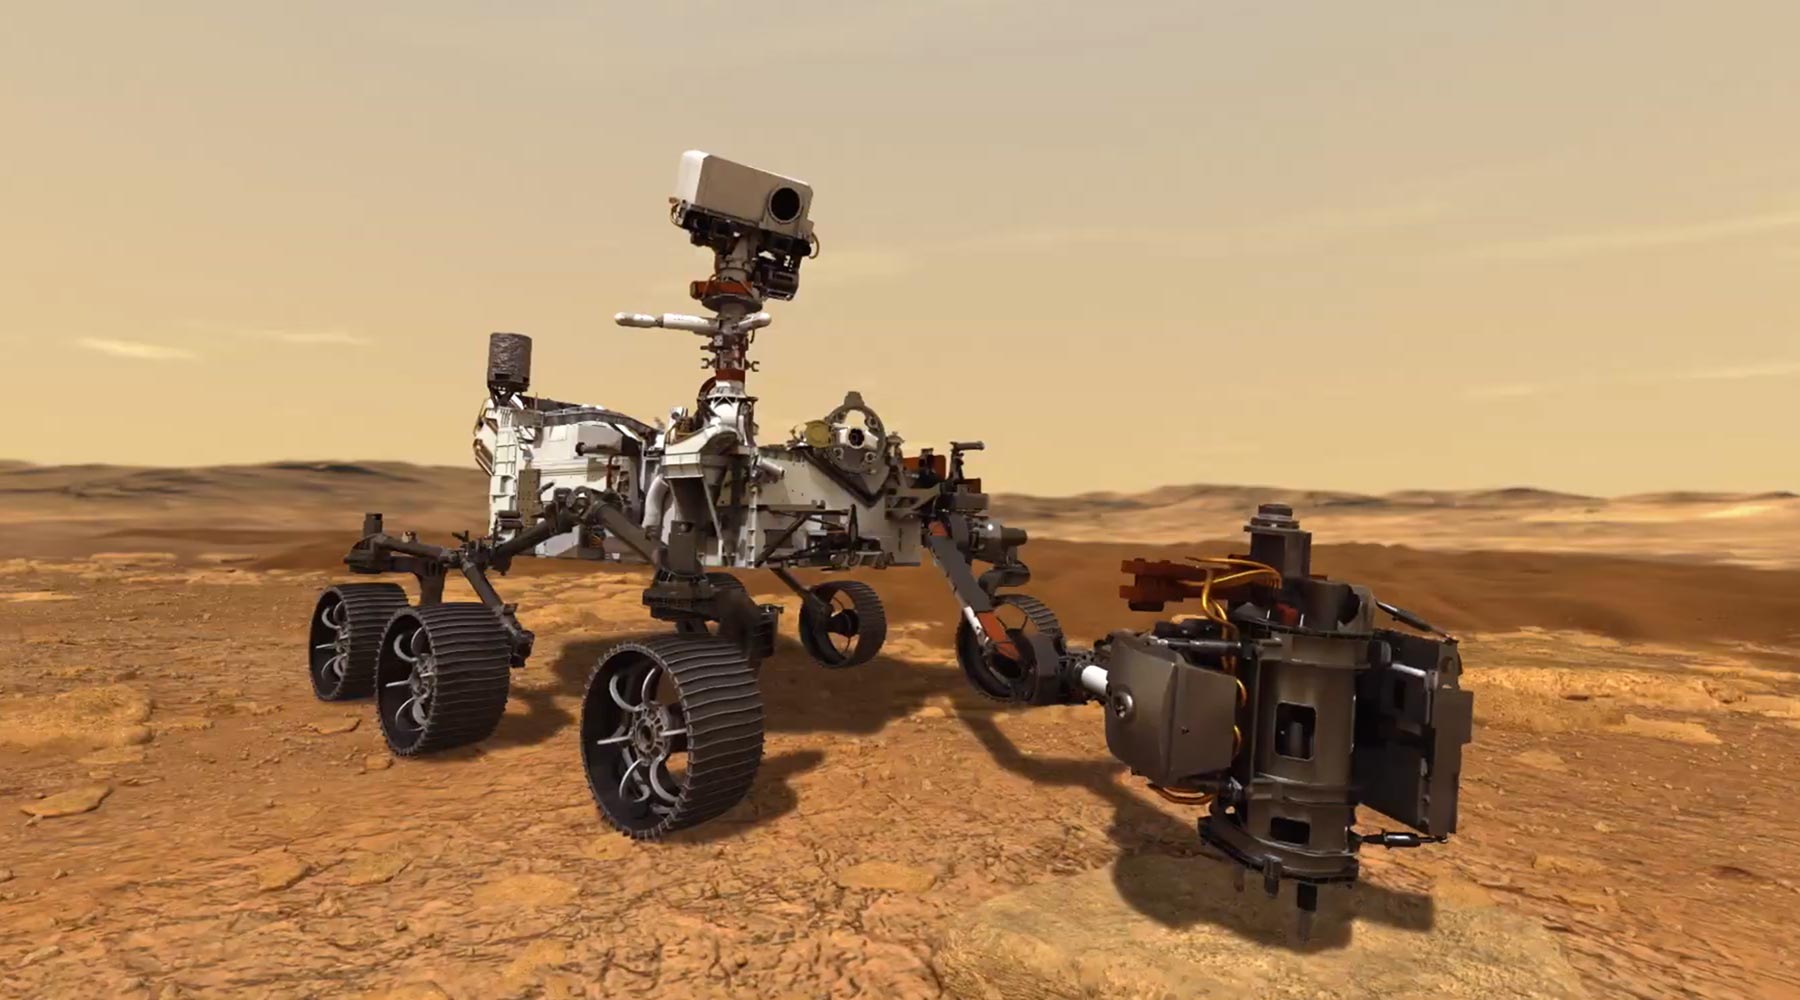 Το Perseverance της NASA οδηγεί σε ένα εξαιρετικό δείγμα Άρη στην τελευταία επιστημονική αποστολή της